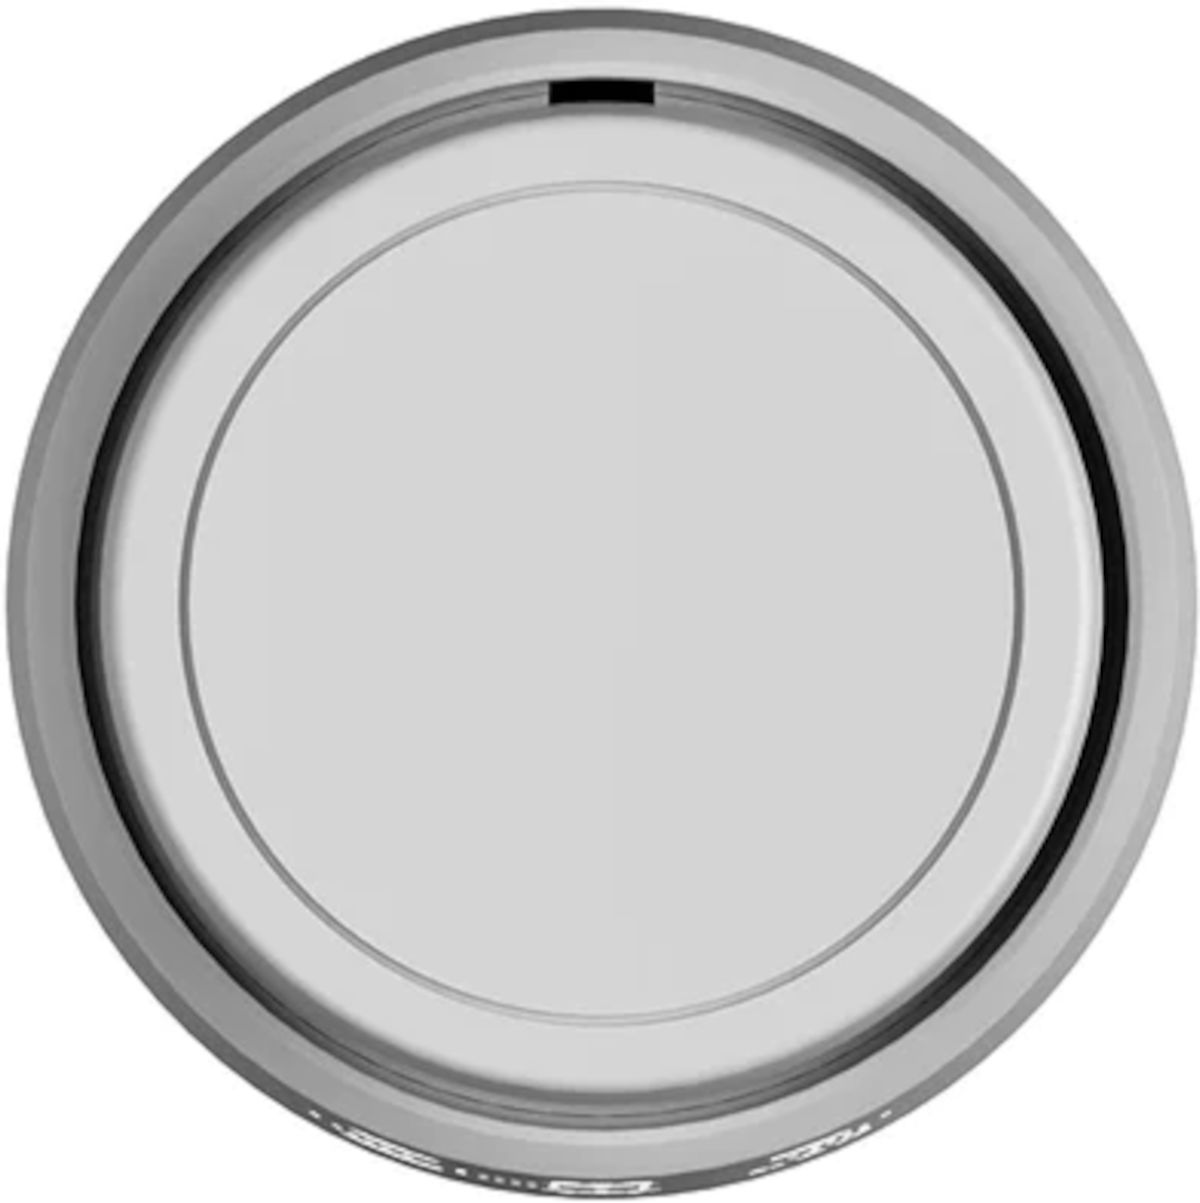 Wesmartify Smart Home Heizkörperthermostat Round, Frontansicht, vor weißem Hintergrund